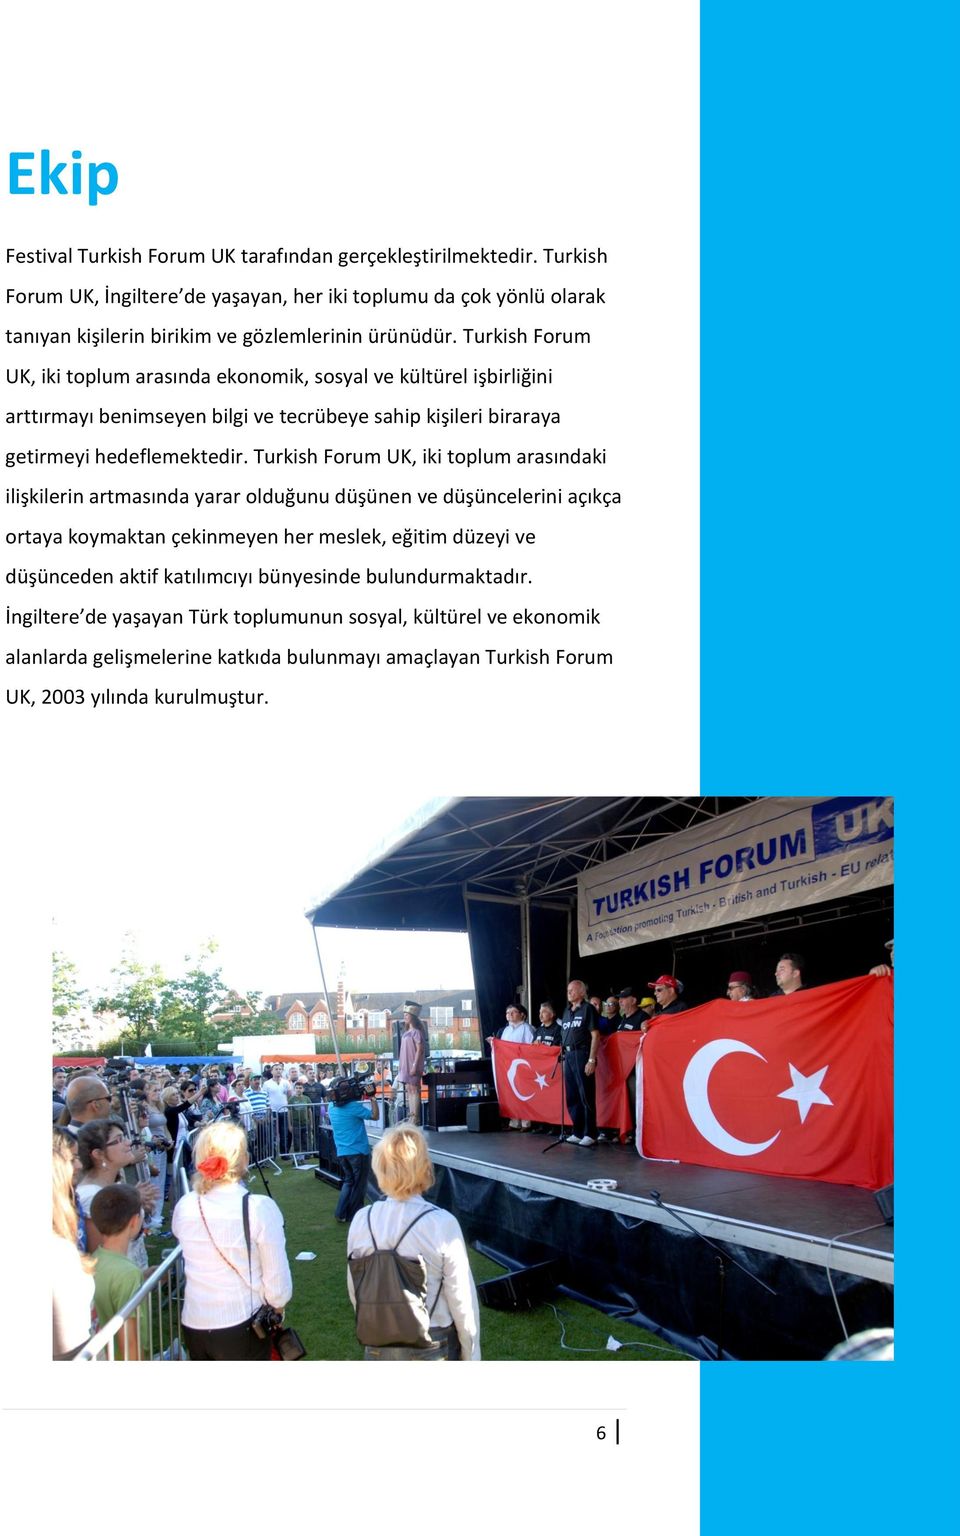 Turkish Forum UK, iki toplum arasında ekonomik, sosyal ve kültürel işbirliğini arttırmayı benimseyen bilgi ve tecrübeye sahip kişileri biraraya getirmeyi hedeflemektedir.